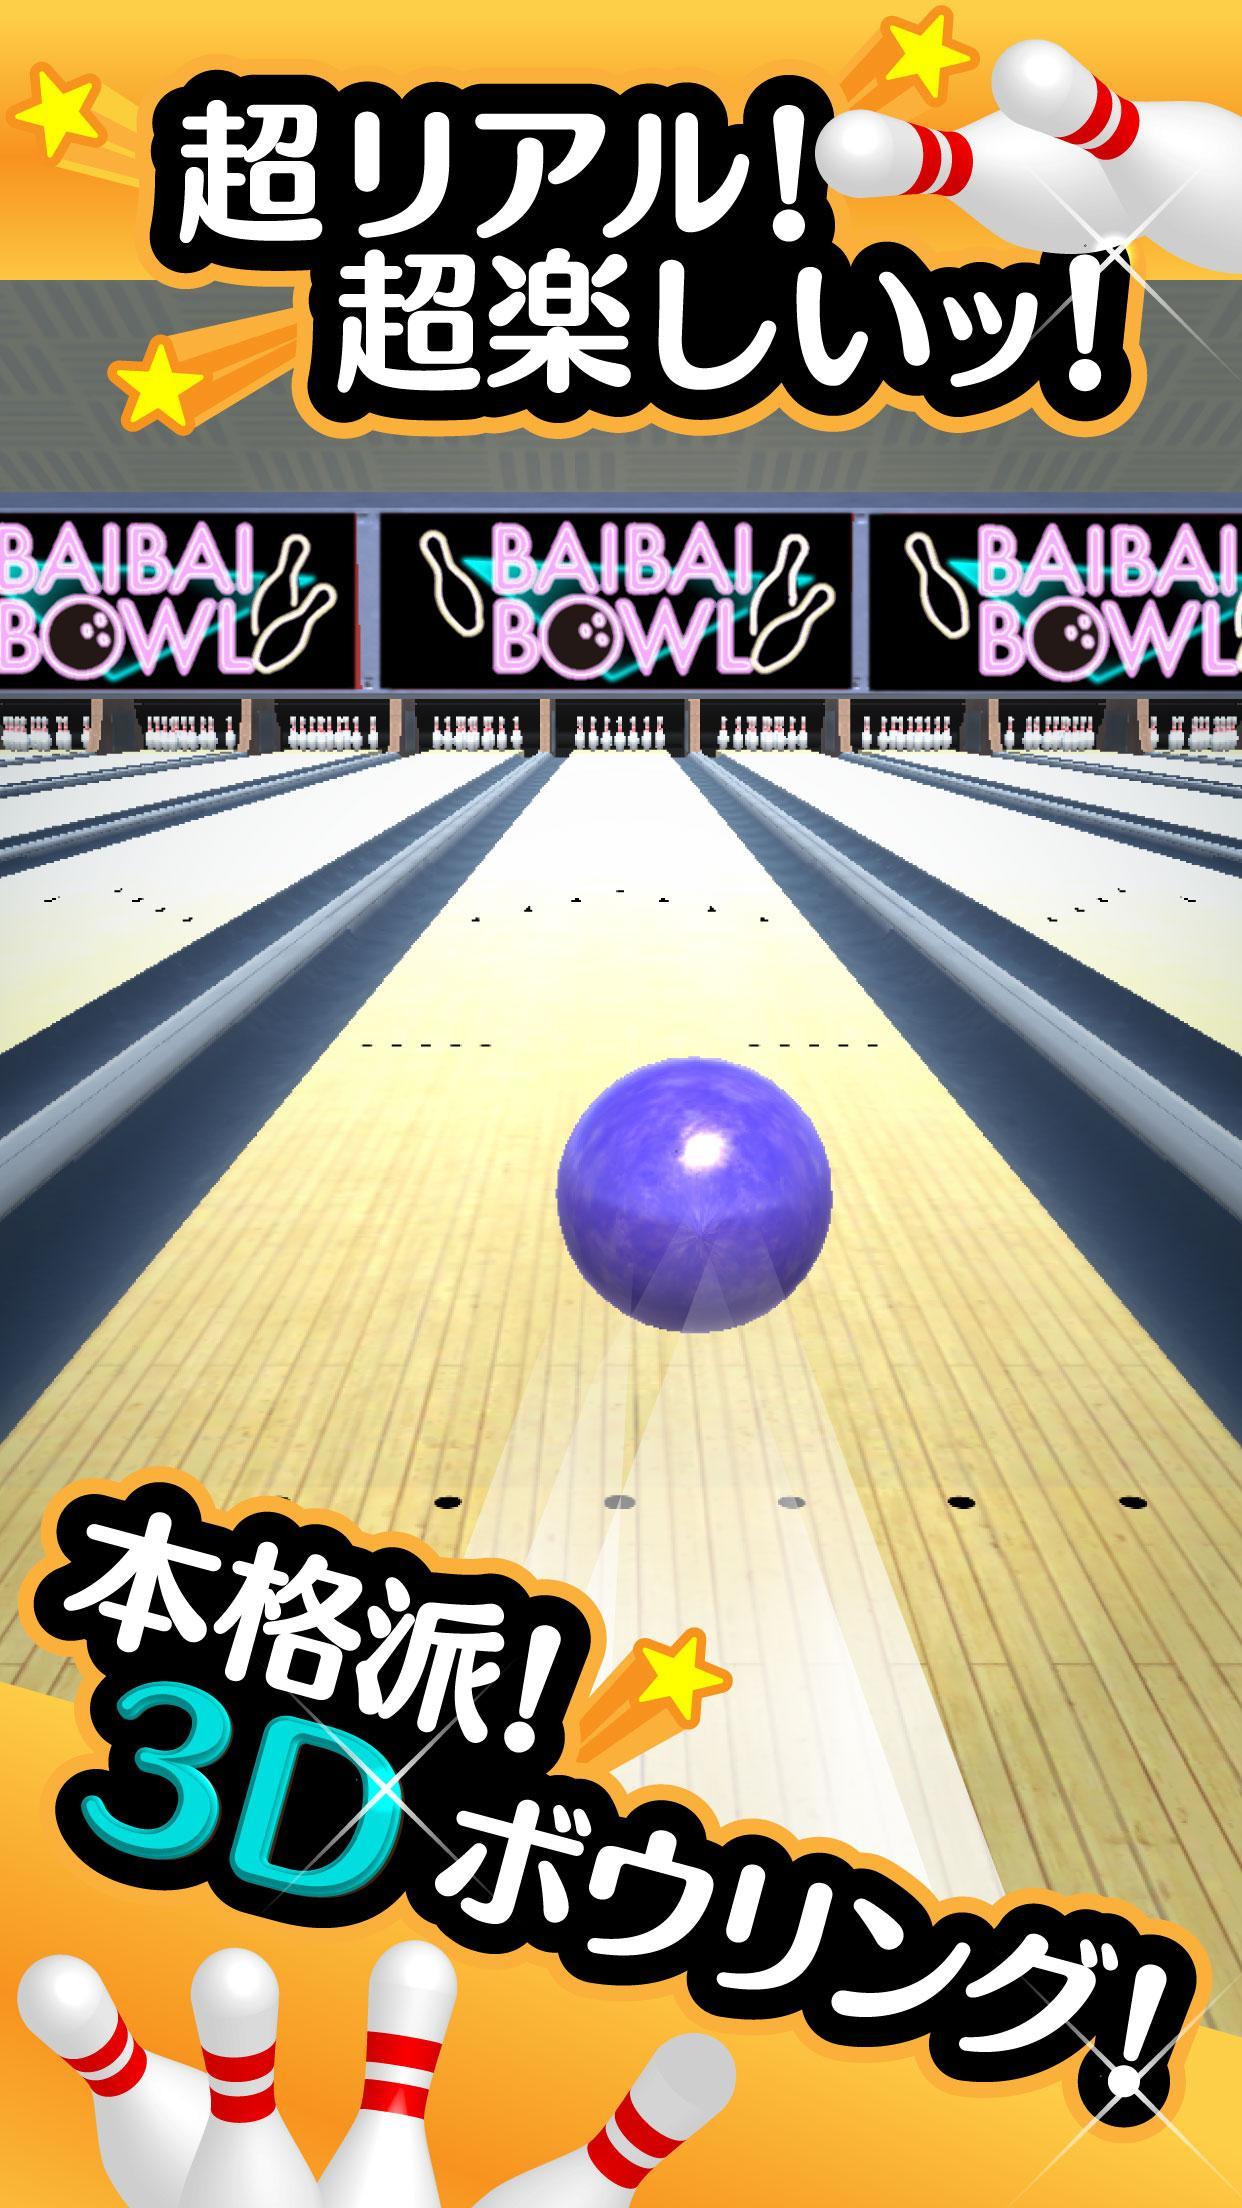 Screenshot 1 of Bowling ordinaire - Jeu de bowling gratuit ! 1.0.4